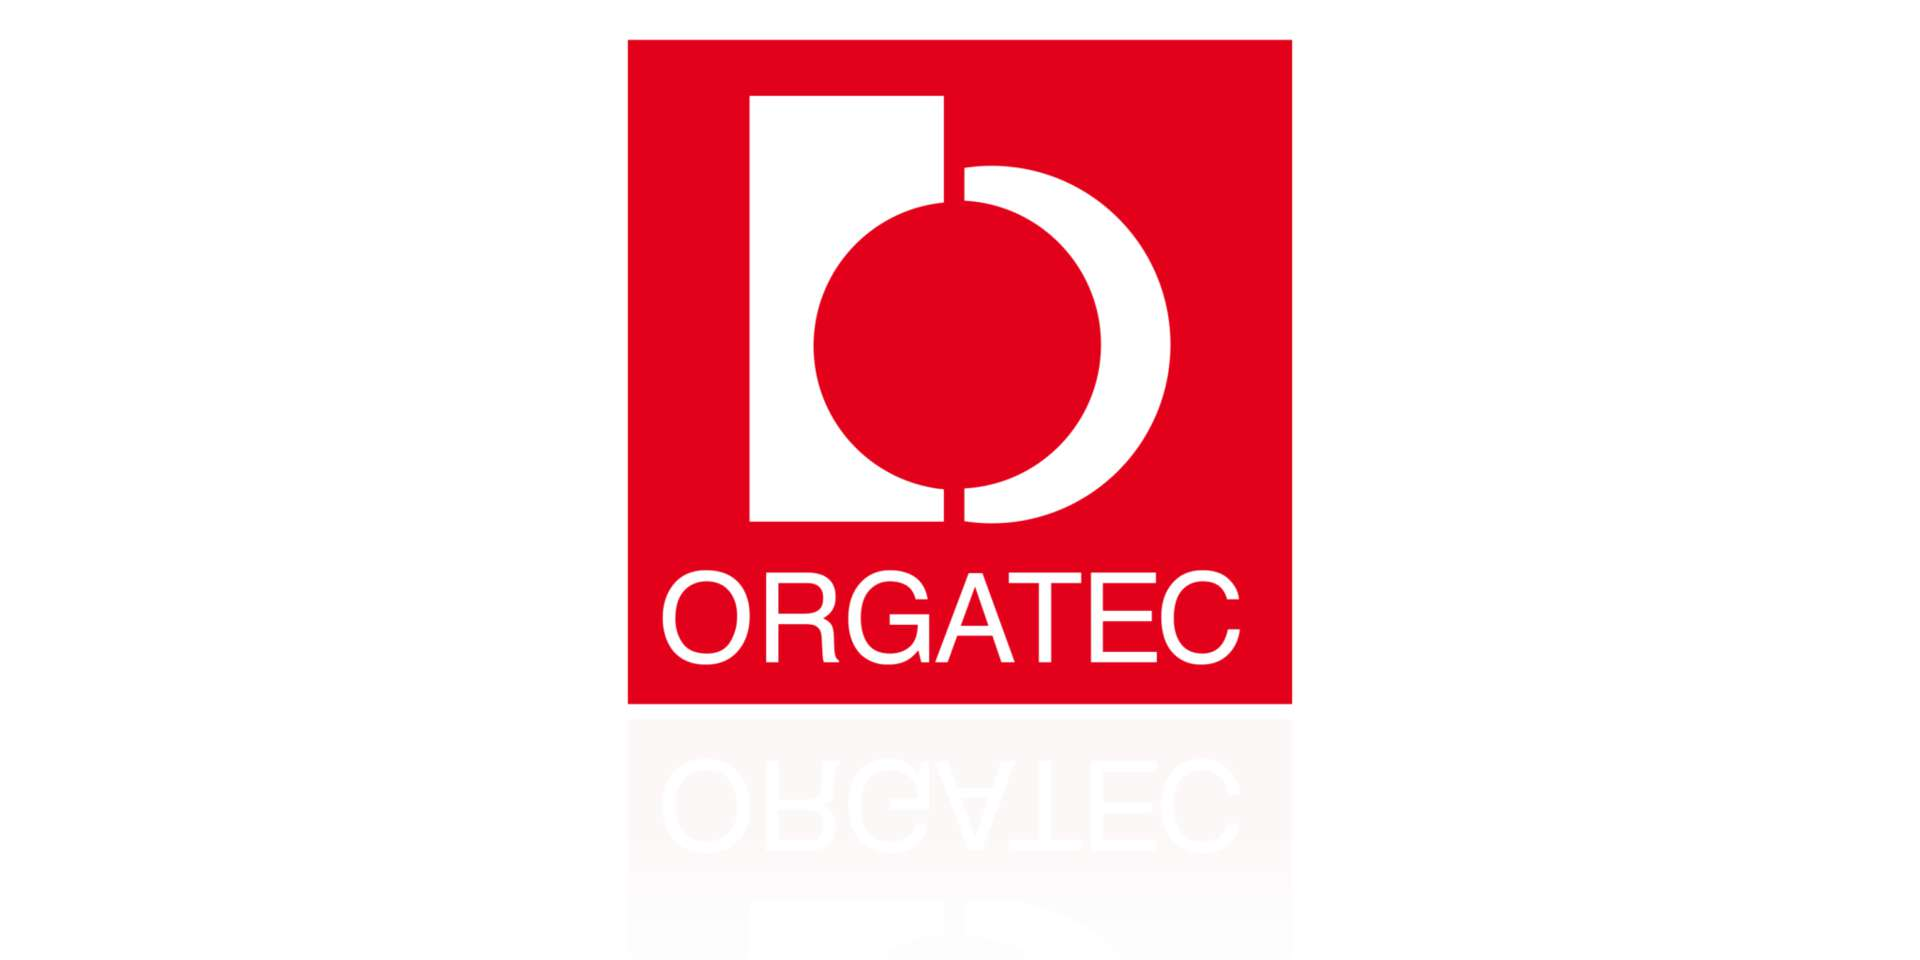 Logo der Orgatec, eine Leitmesse für moderne Arbeitswelten.  1:1-Nachbau des Logos durch VBG für die eigene Website, da die Originalvorlage eine Pixeldatei mit geringer Auflösung war.